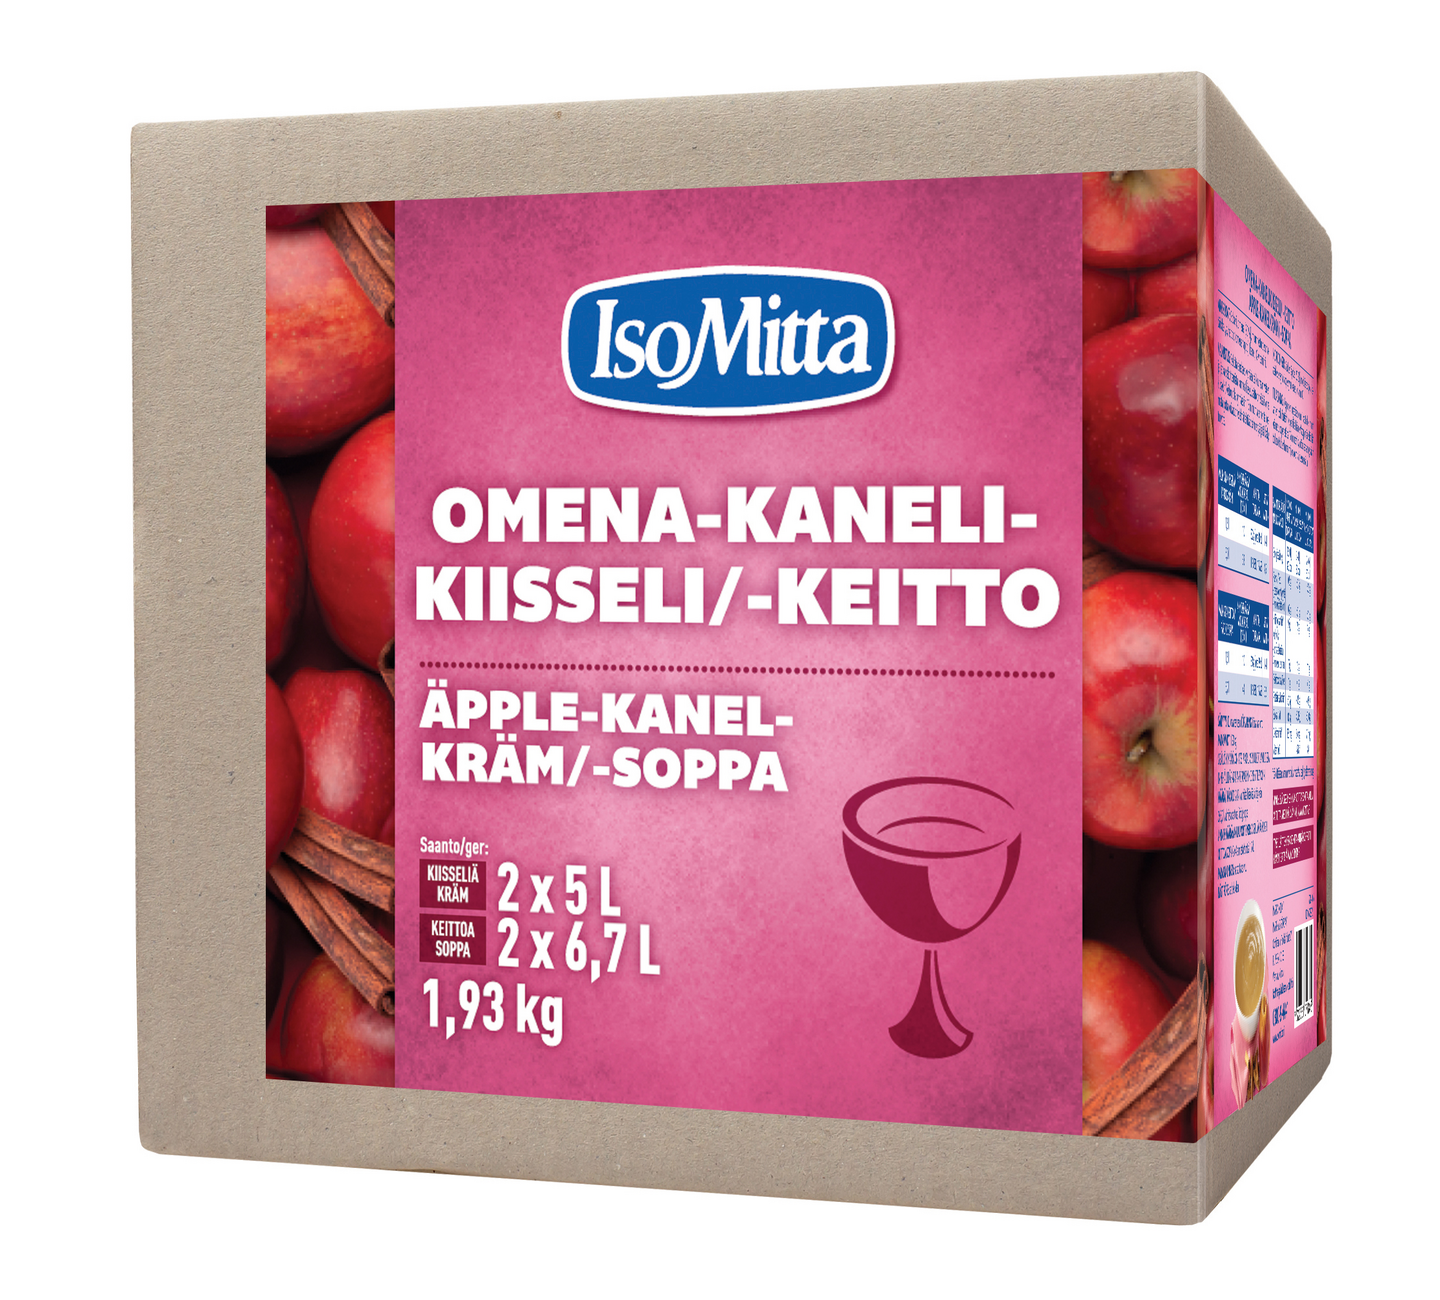 IsoMitta Omena-Kanelikiisseli/-keitto 2x965g